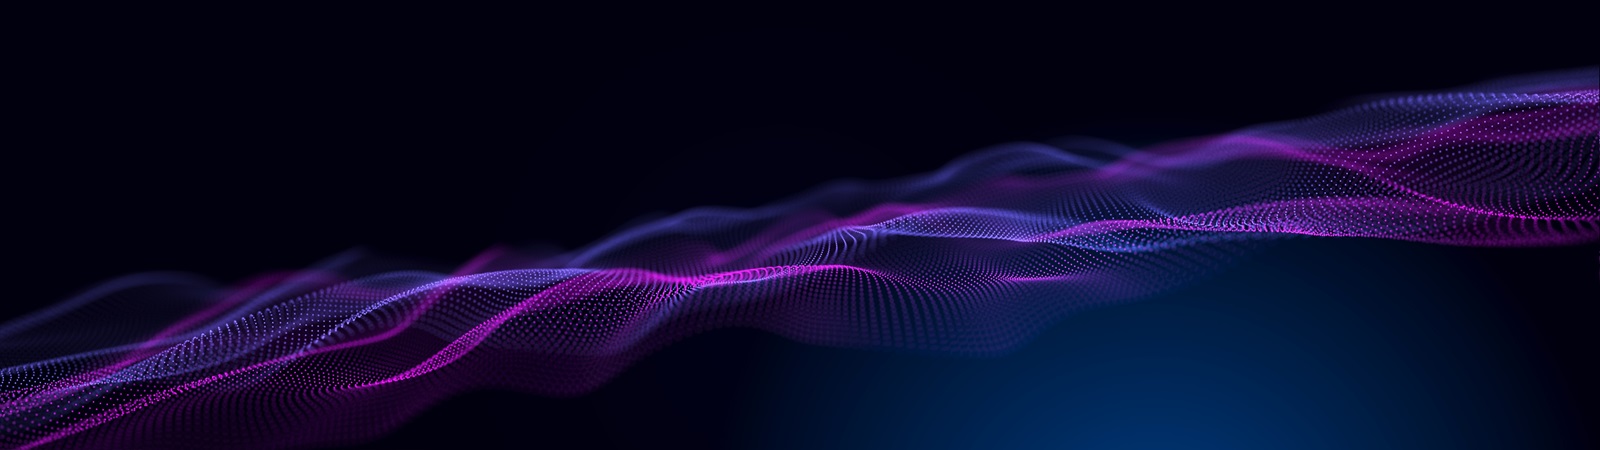 flowing purple texture on dark background